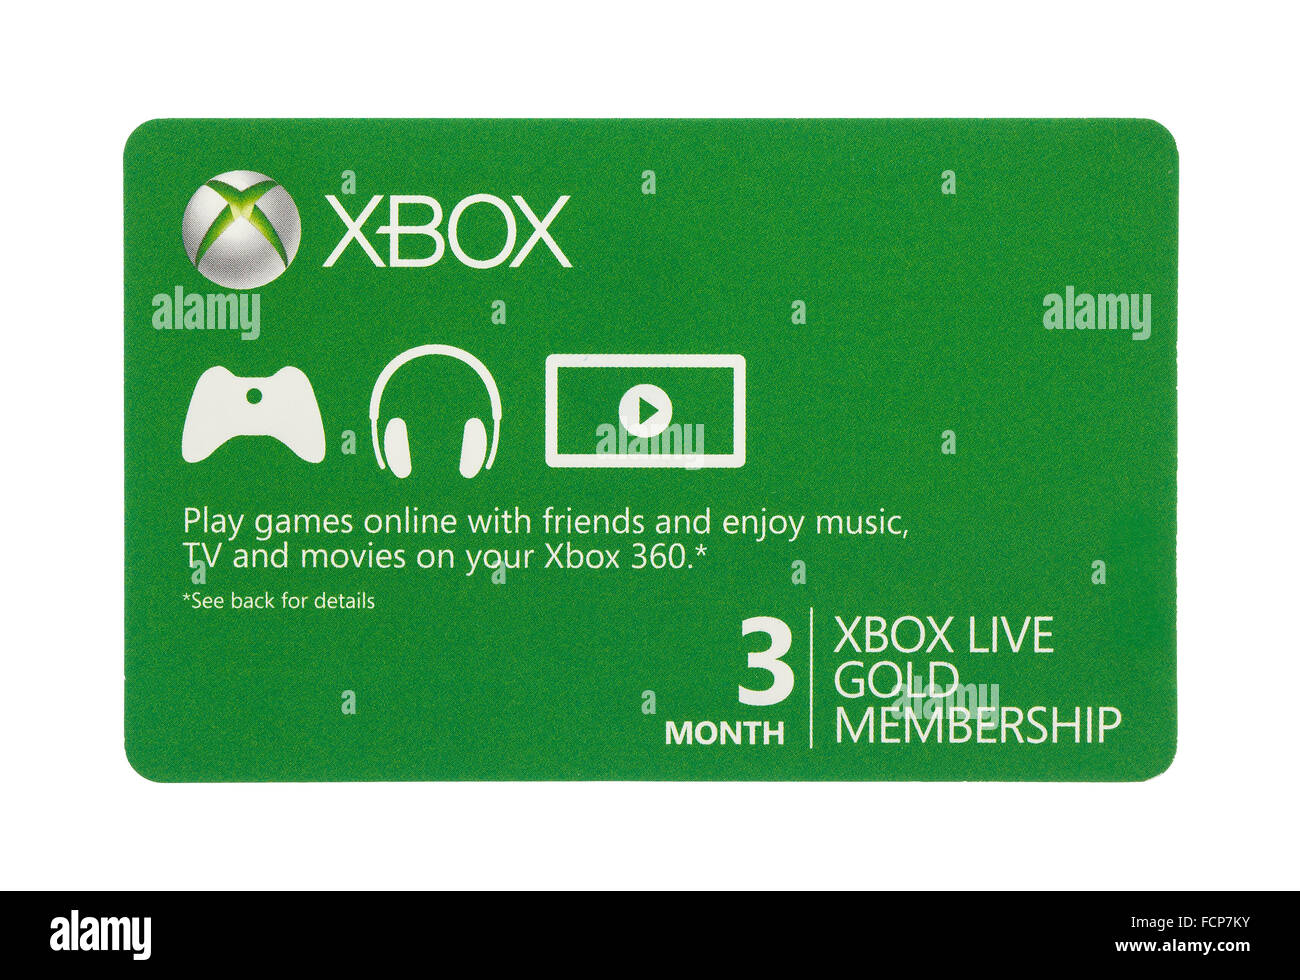 Xbox live Banque de photographies et d'images à haute résolution - Alamy